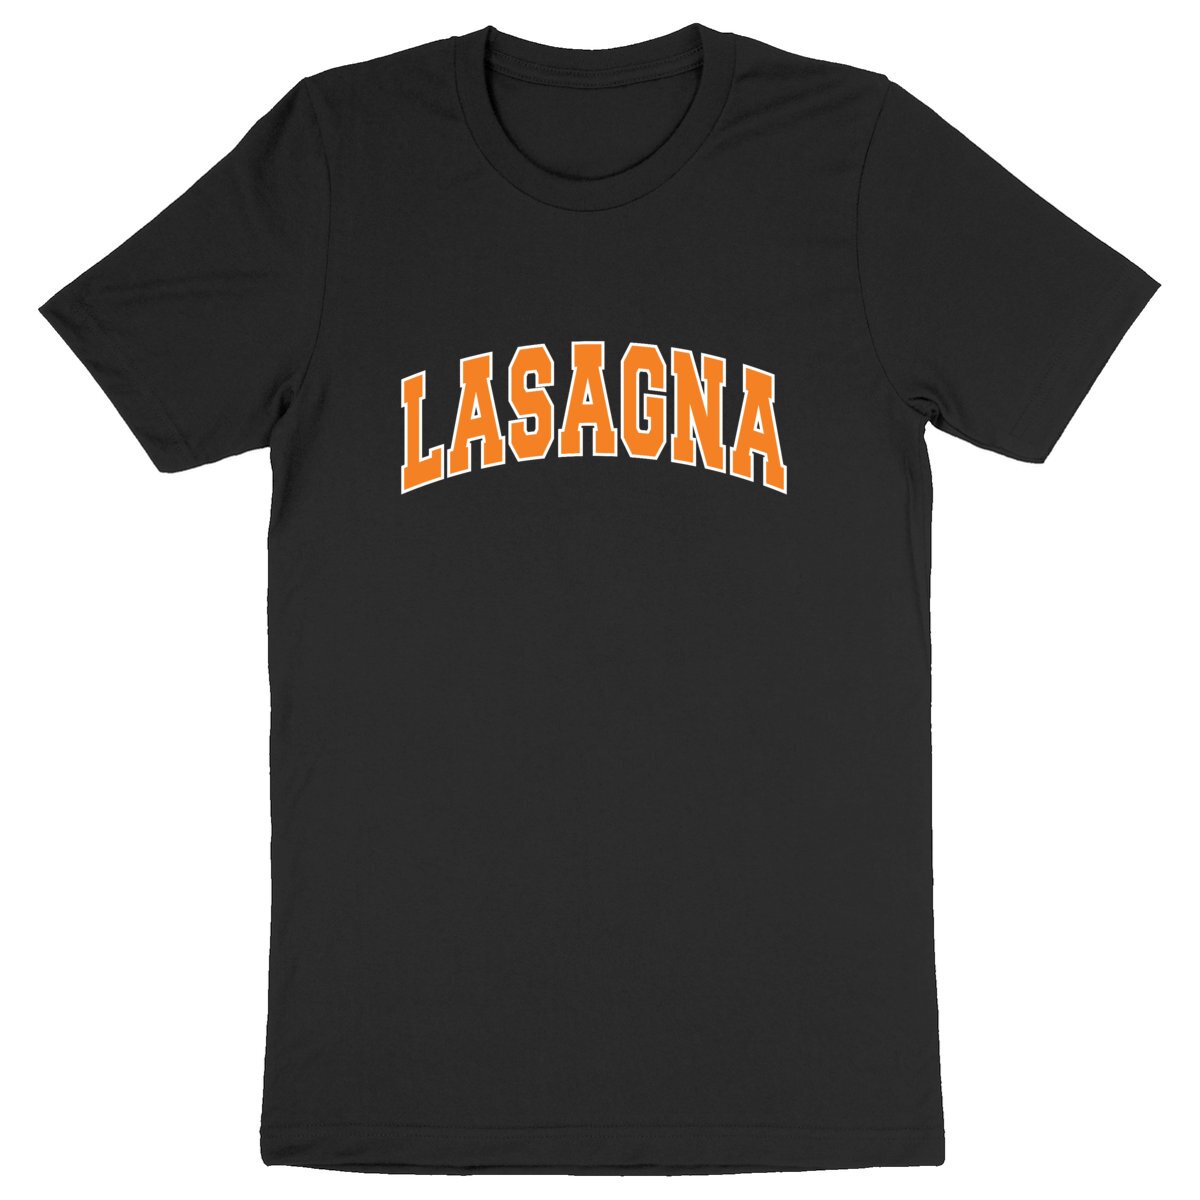 Lasagna - Unisex Organic T-shirt